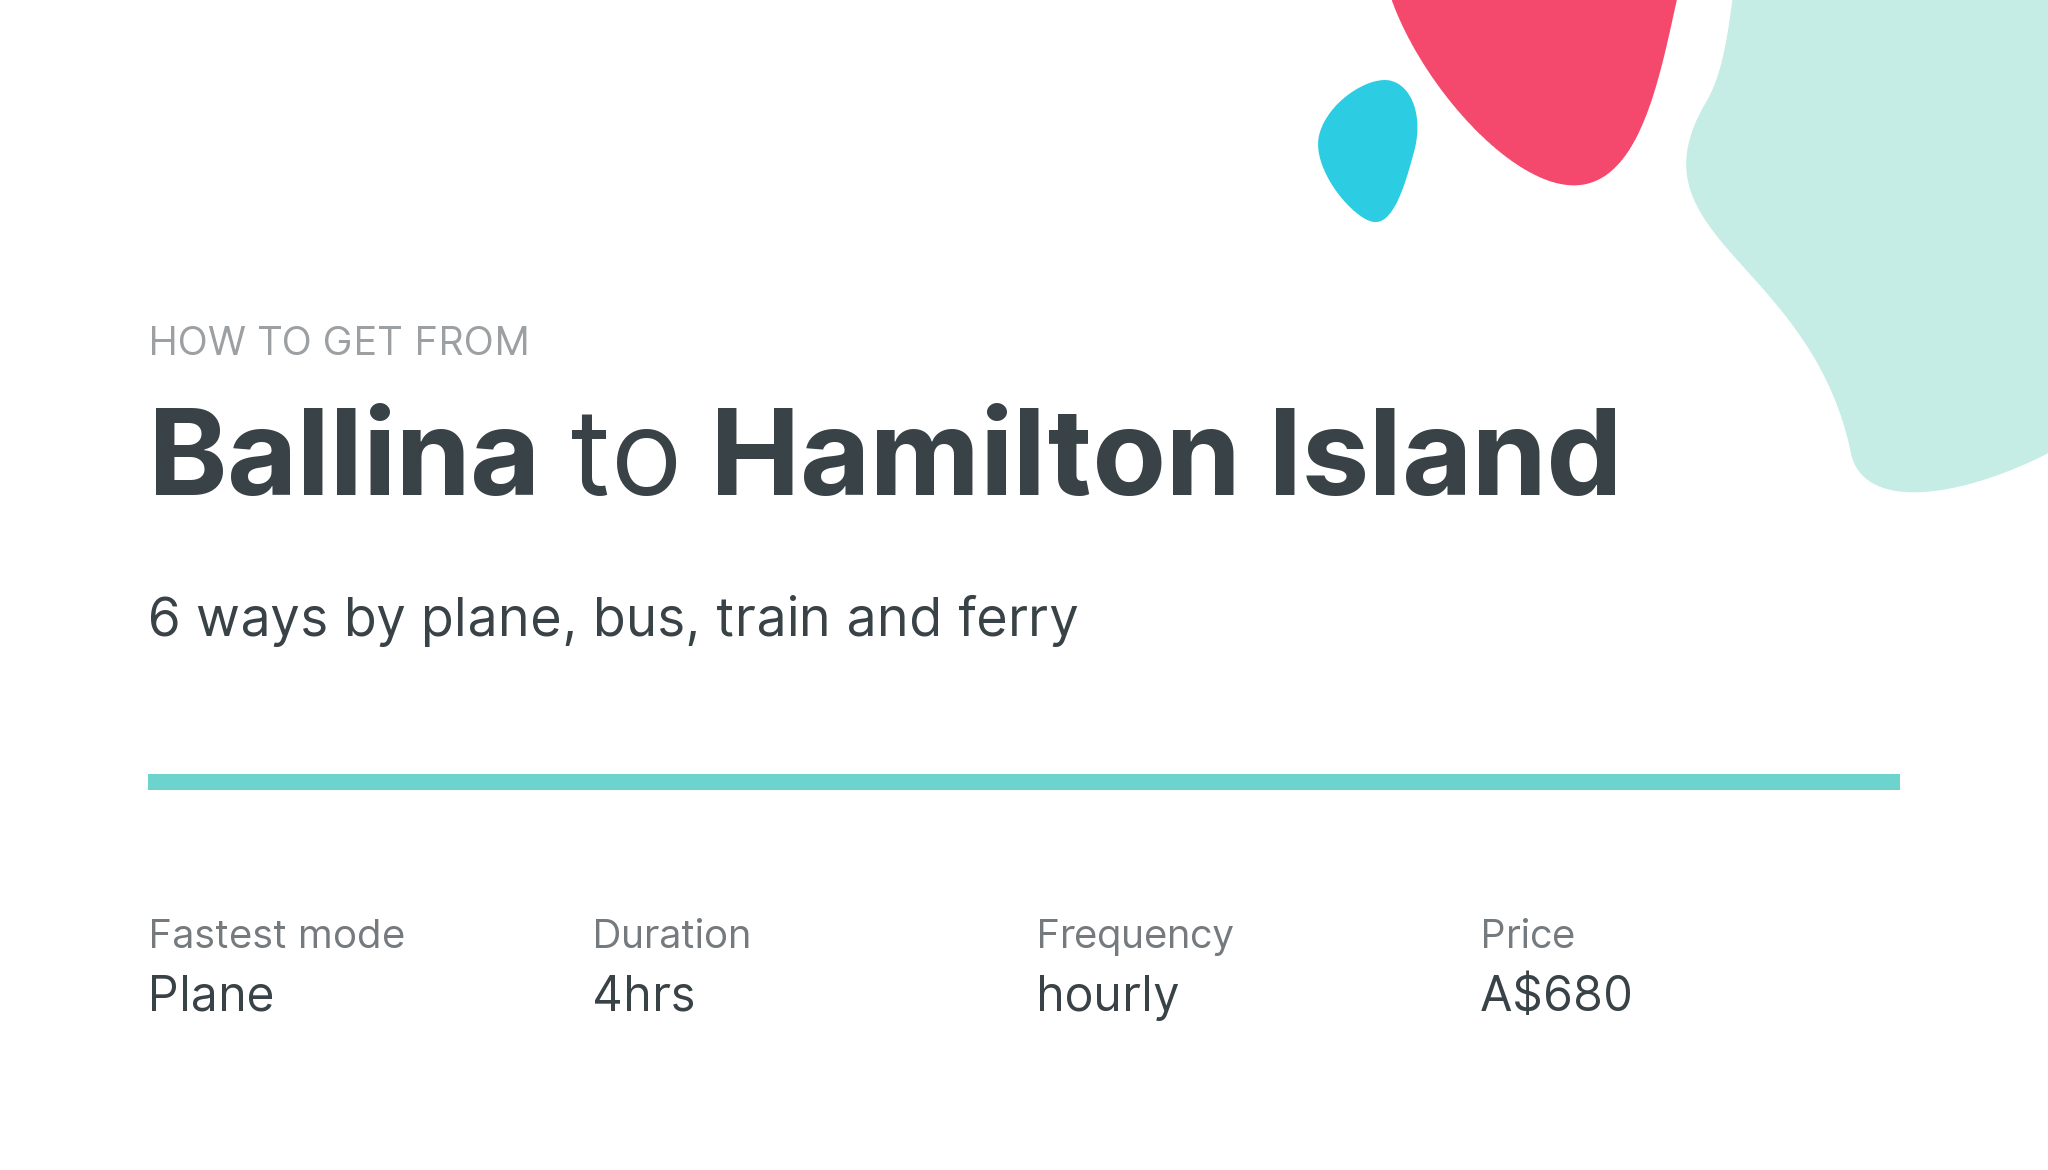 How do I get from Ballina to Hamilton Island